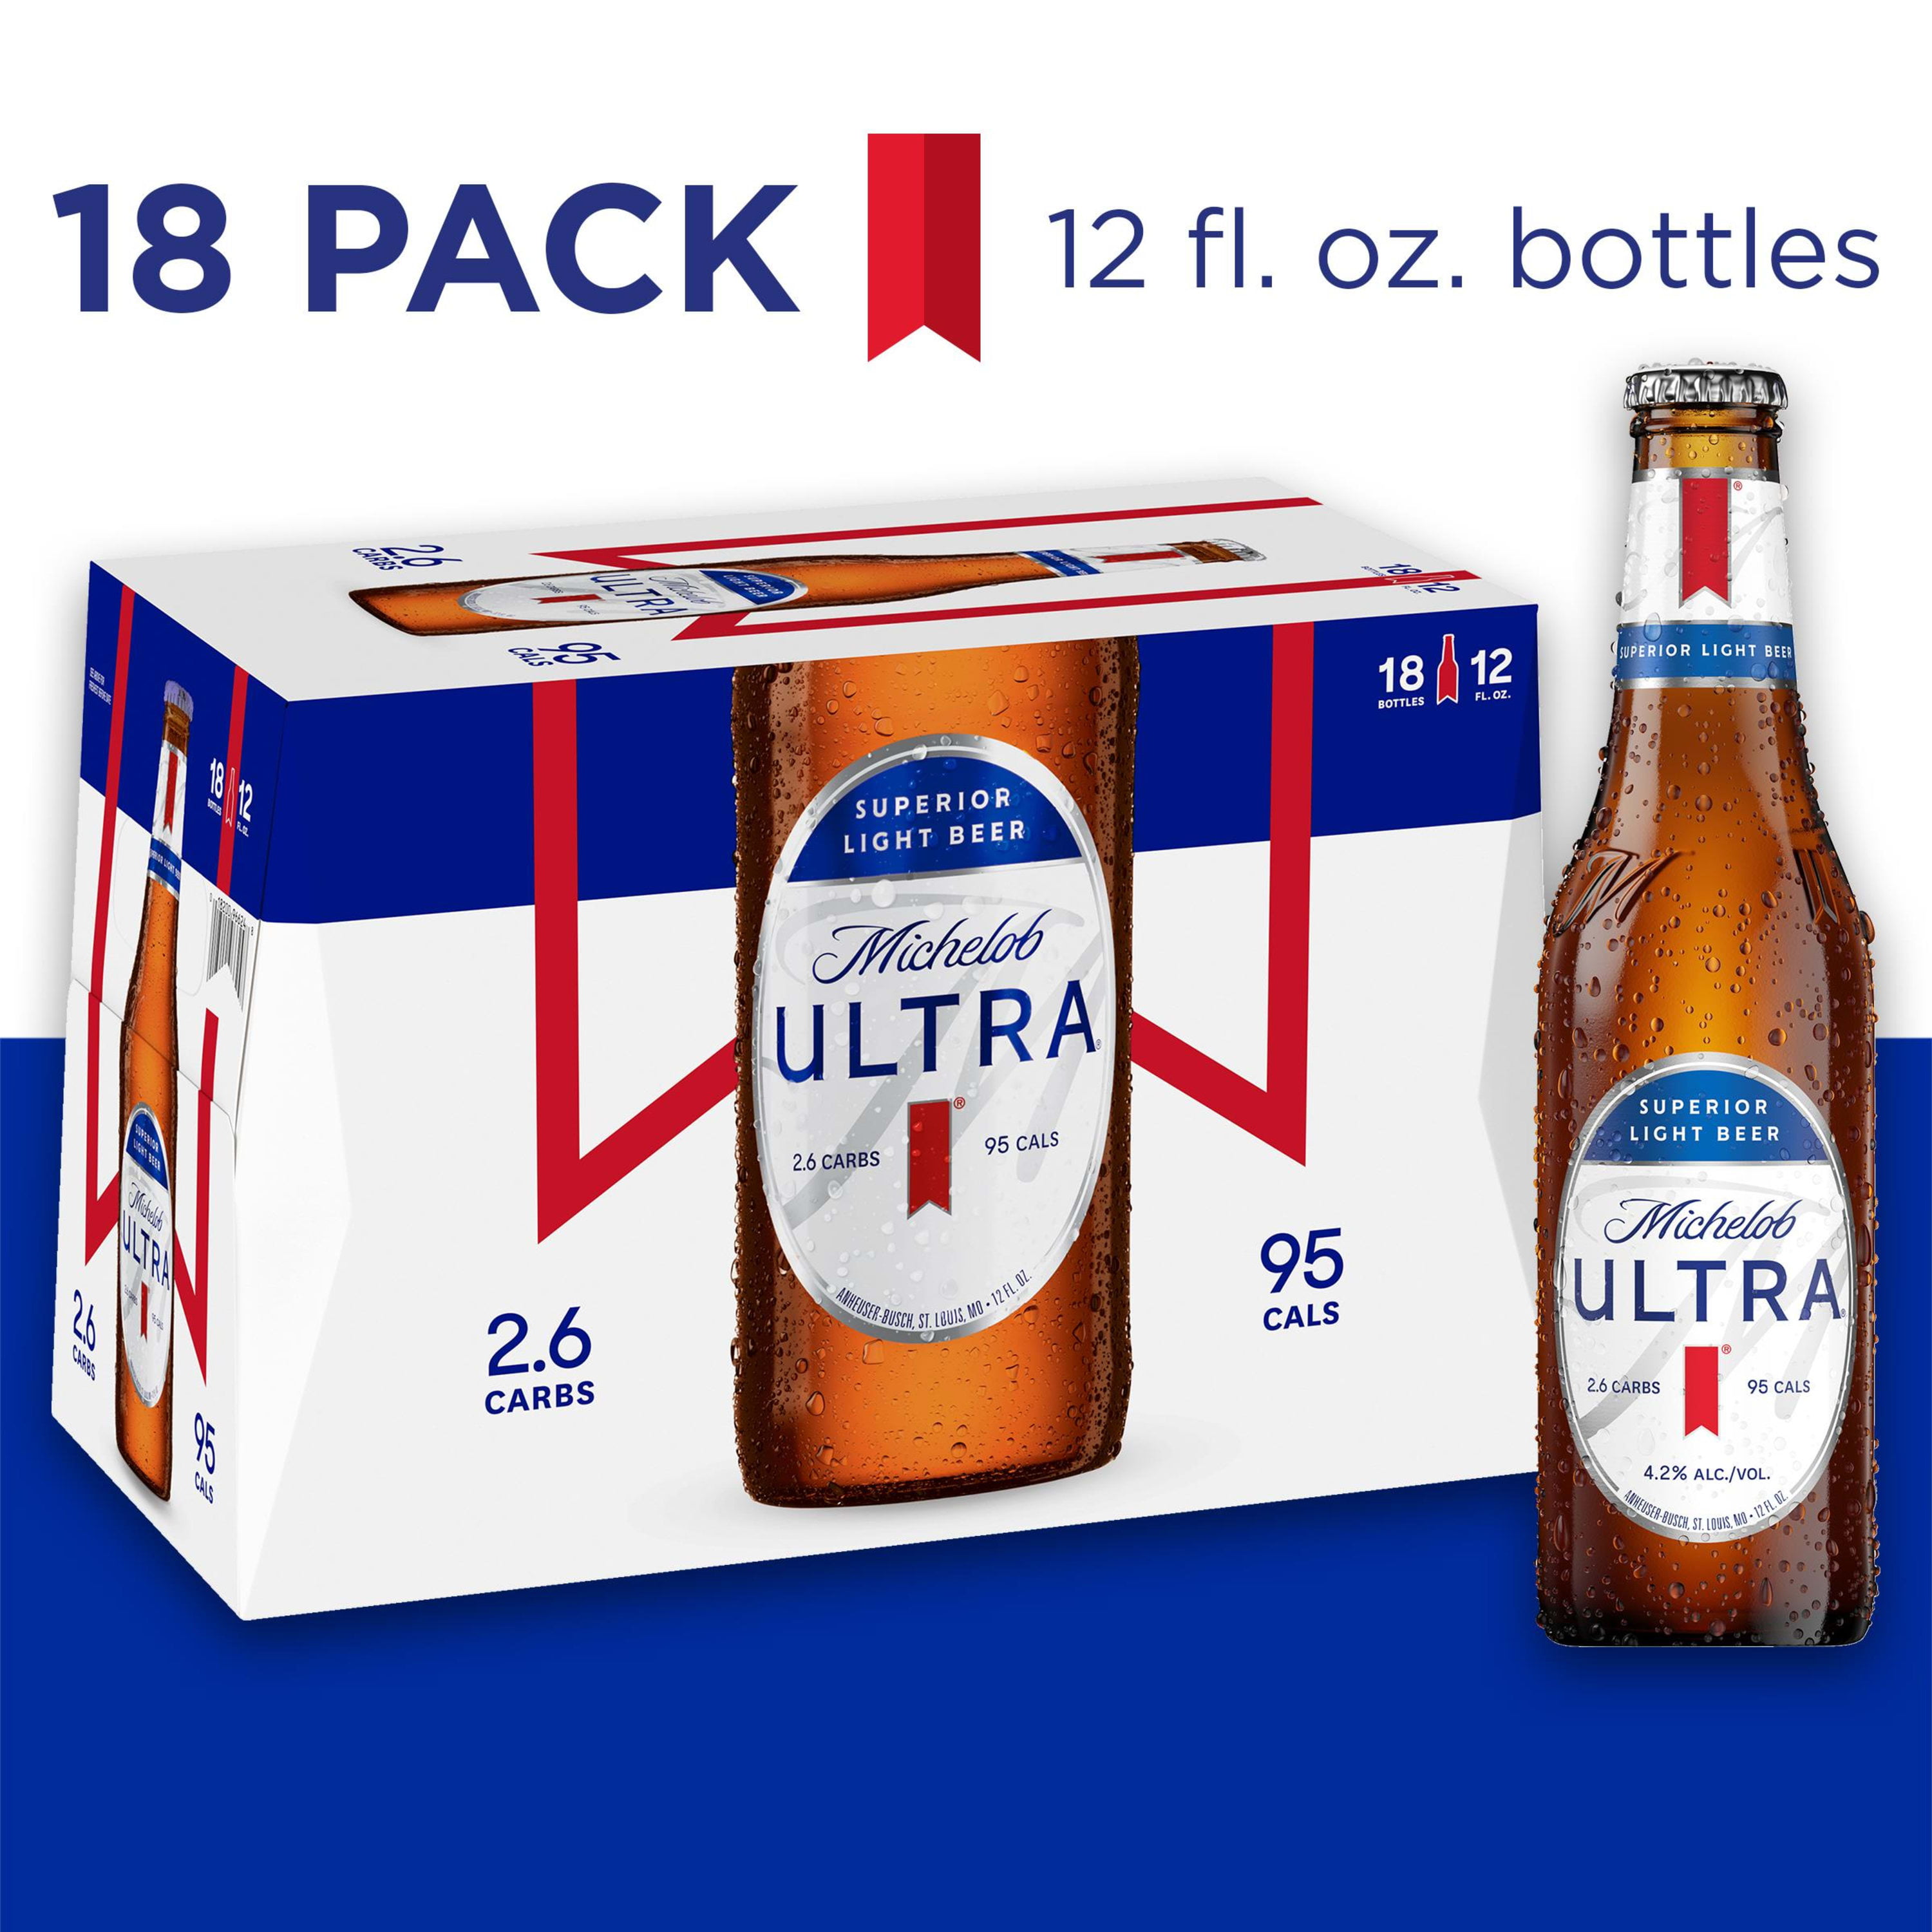 buy-michelob-ultra-light-beer-18-pack-beer-12-fl-oz-bottles-online-in